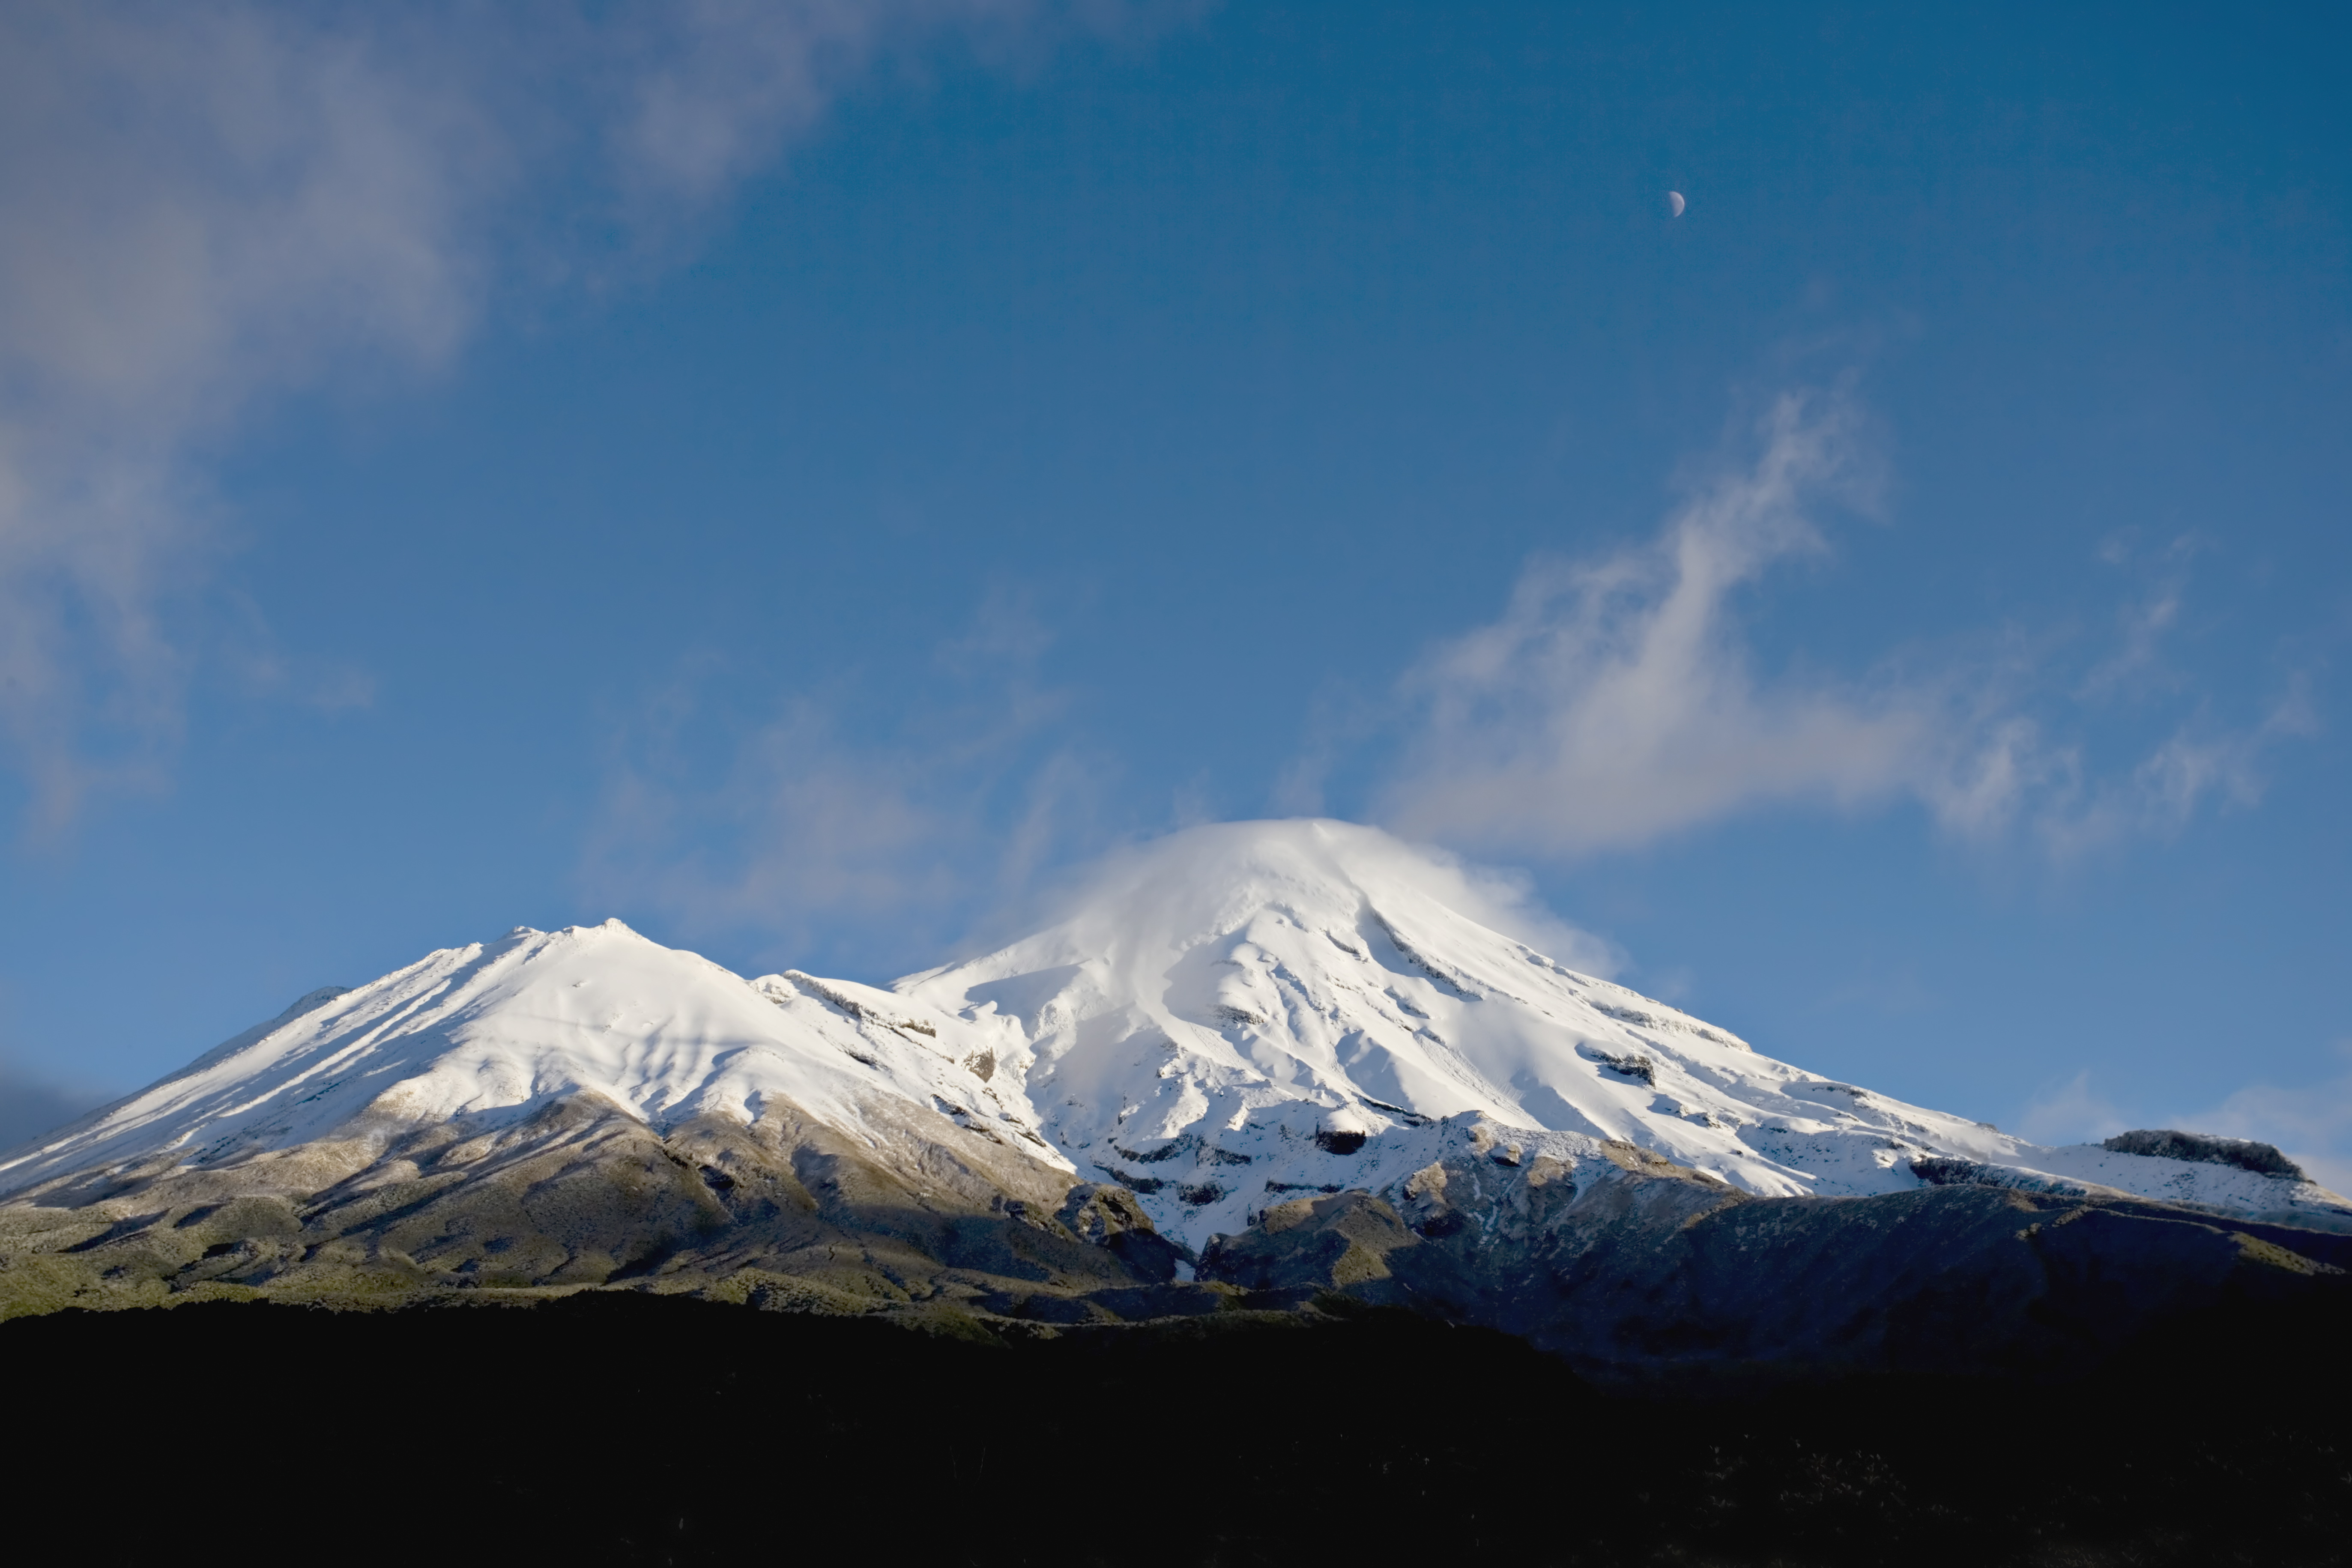 Embereket megillető jogi státuszt kapott egy hegy Új-Zélandon